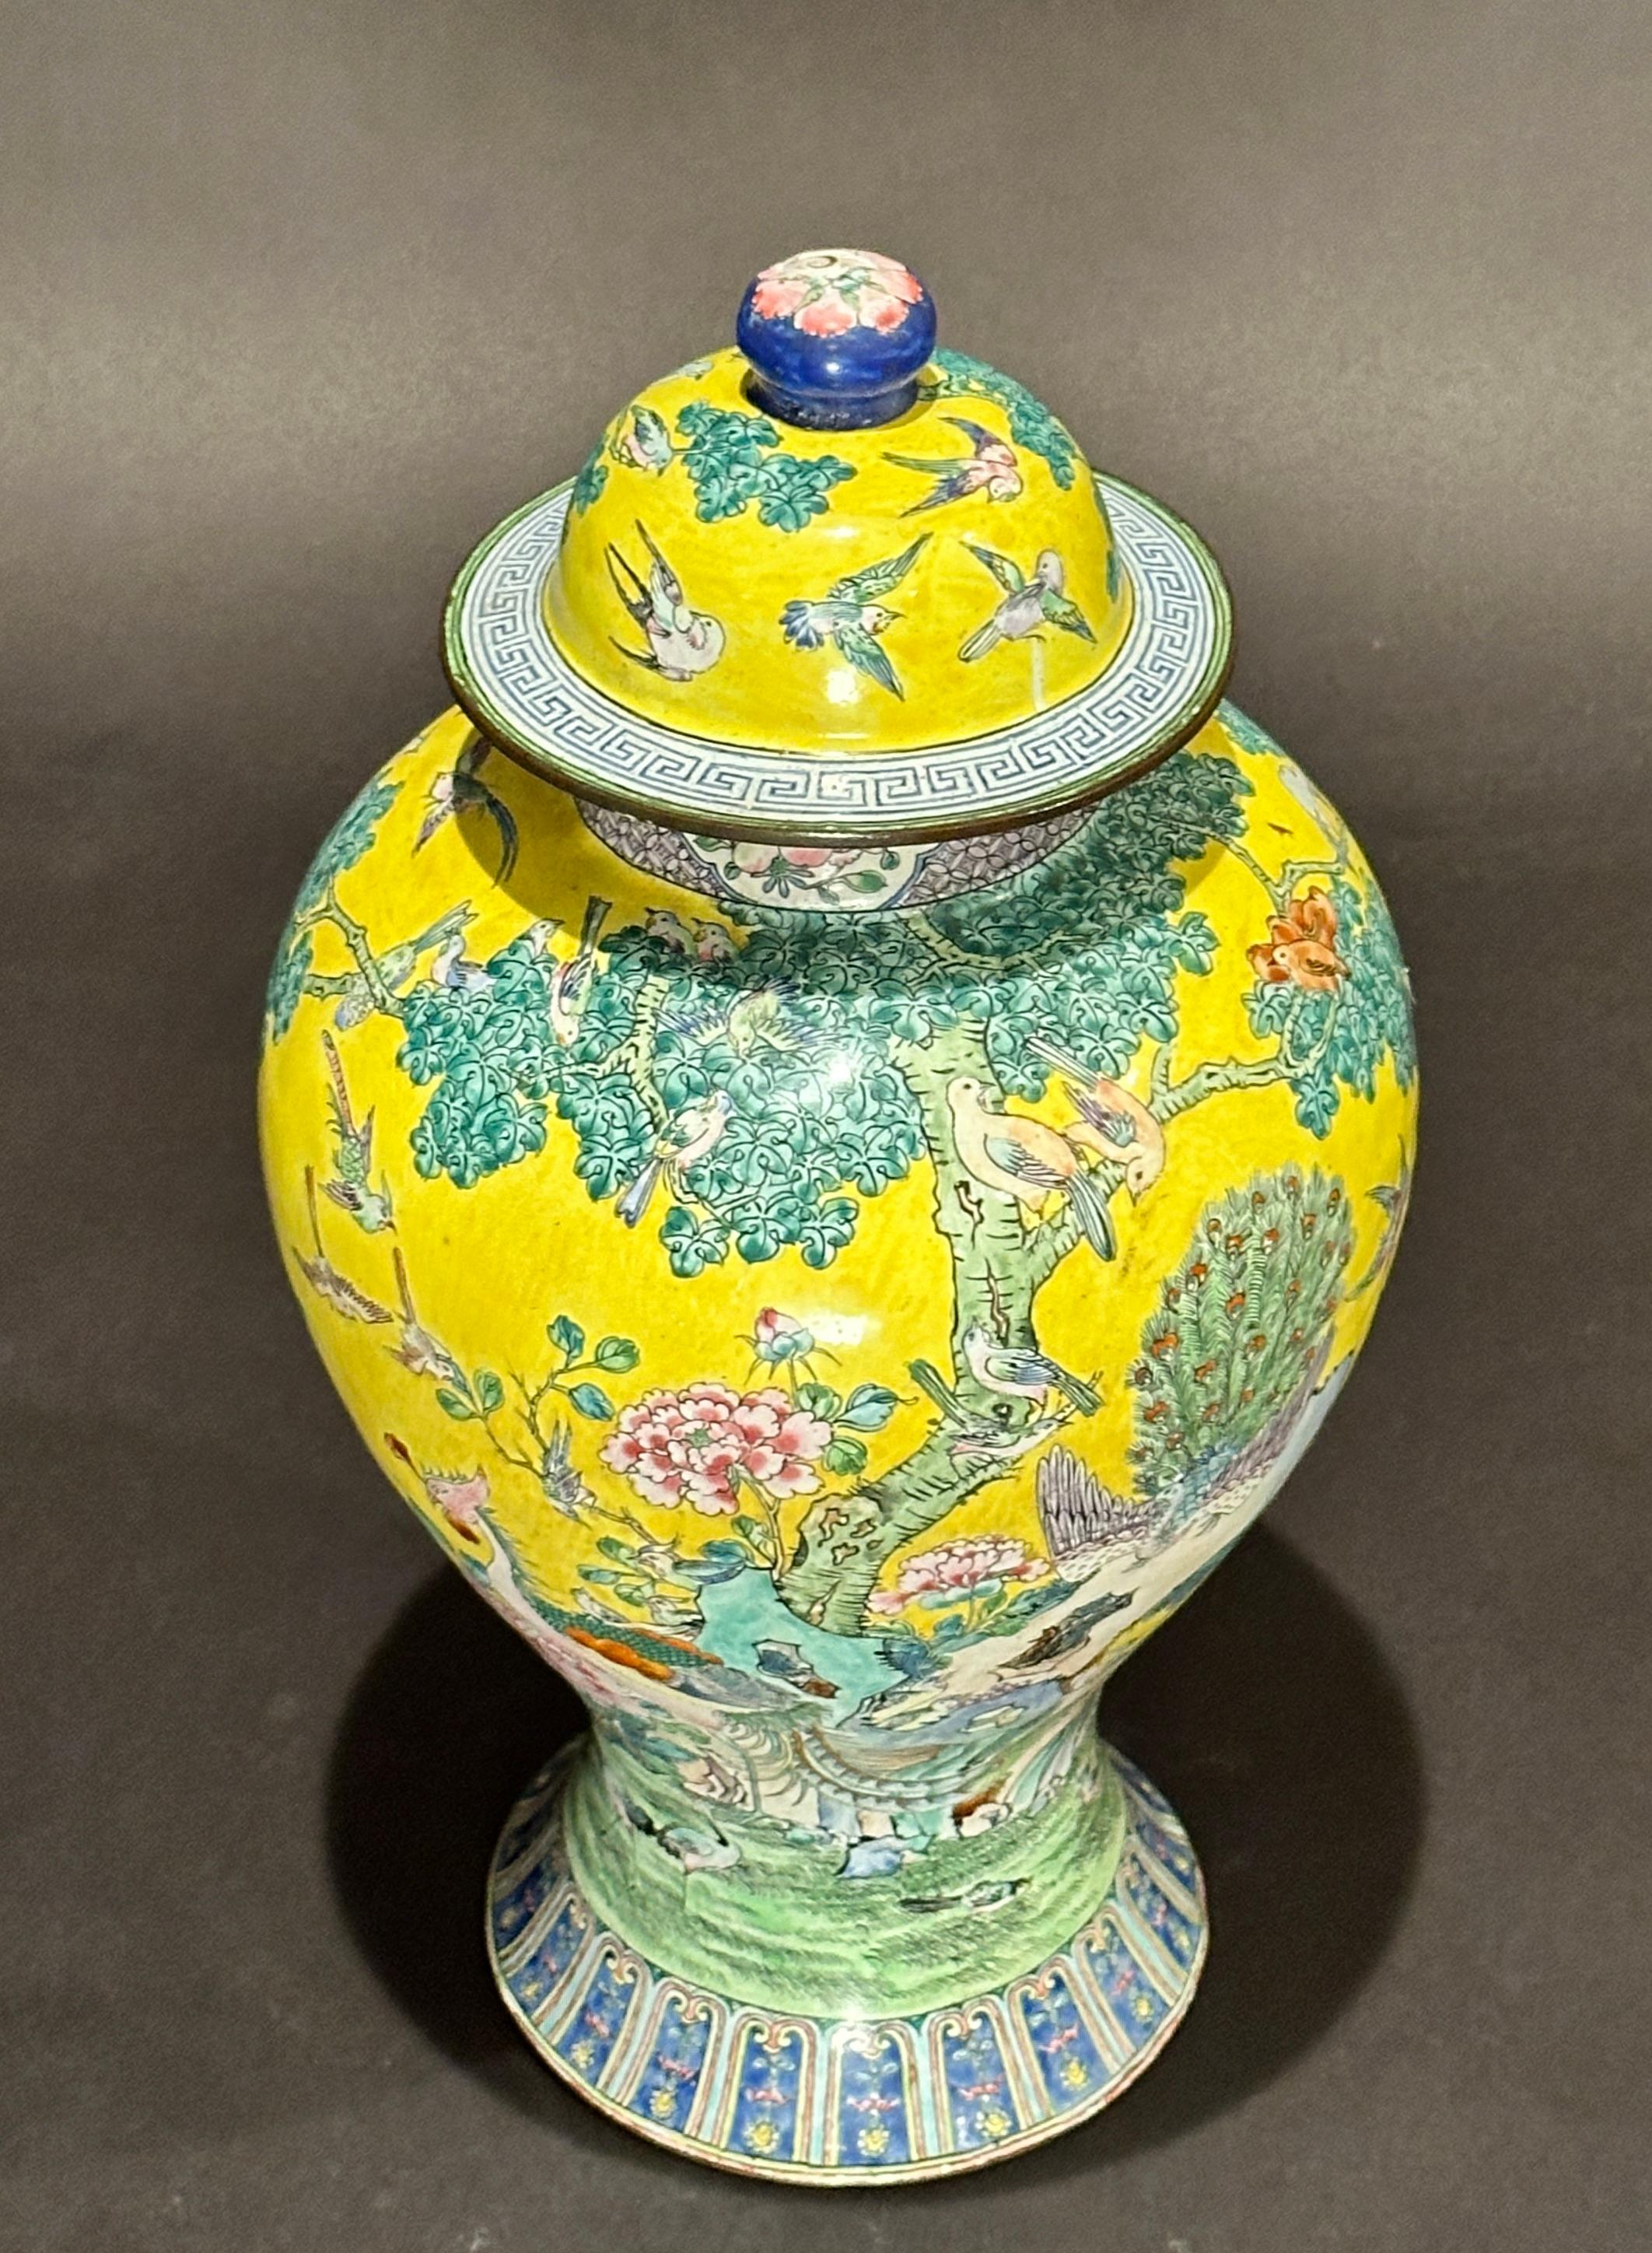 Fein auf Kupfer emaillierte chinesische überzogene Ingwer-Vase mit gelbem Grunddekor, Szenen mit exotischen Vögeln und Blattwerk. Buntes Gefäß mit gelben, grünen, blauen und weißen Farben. Unten mit Doppeldrache.